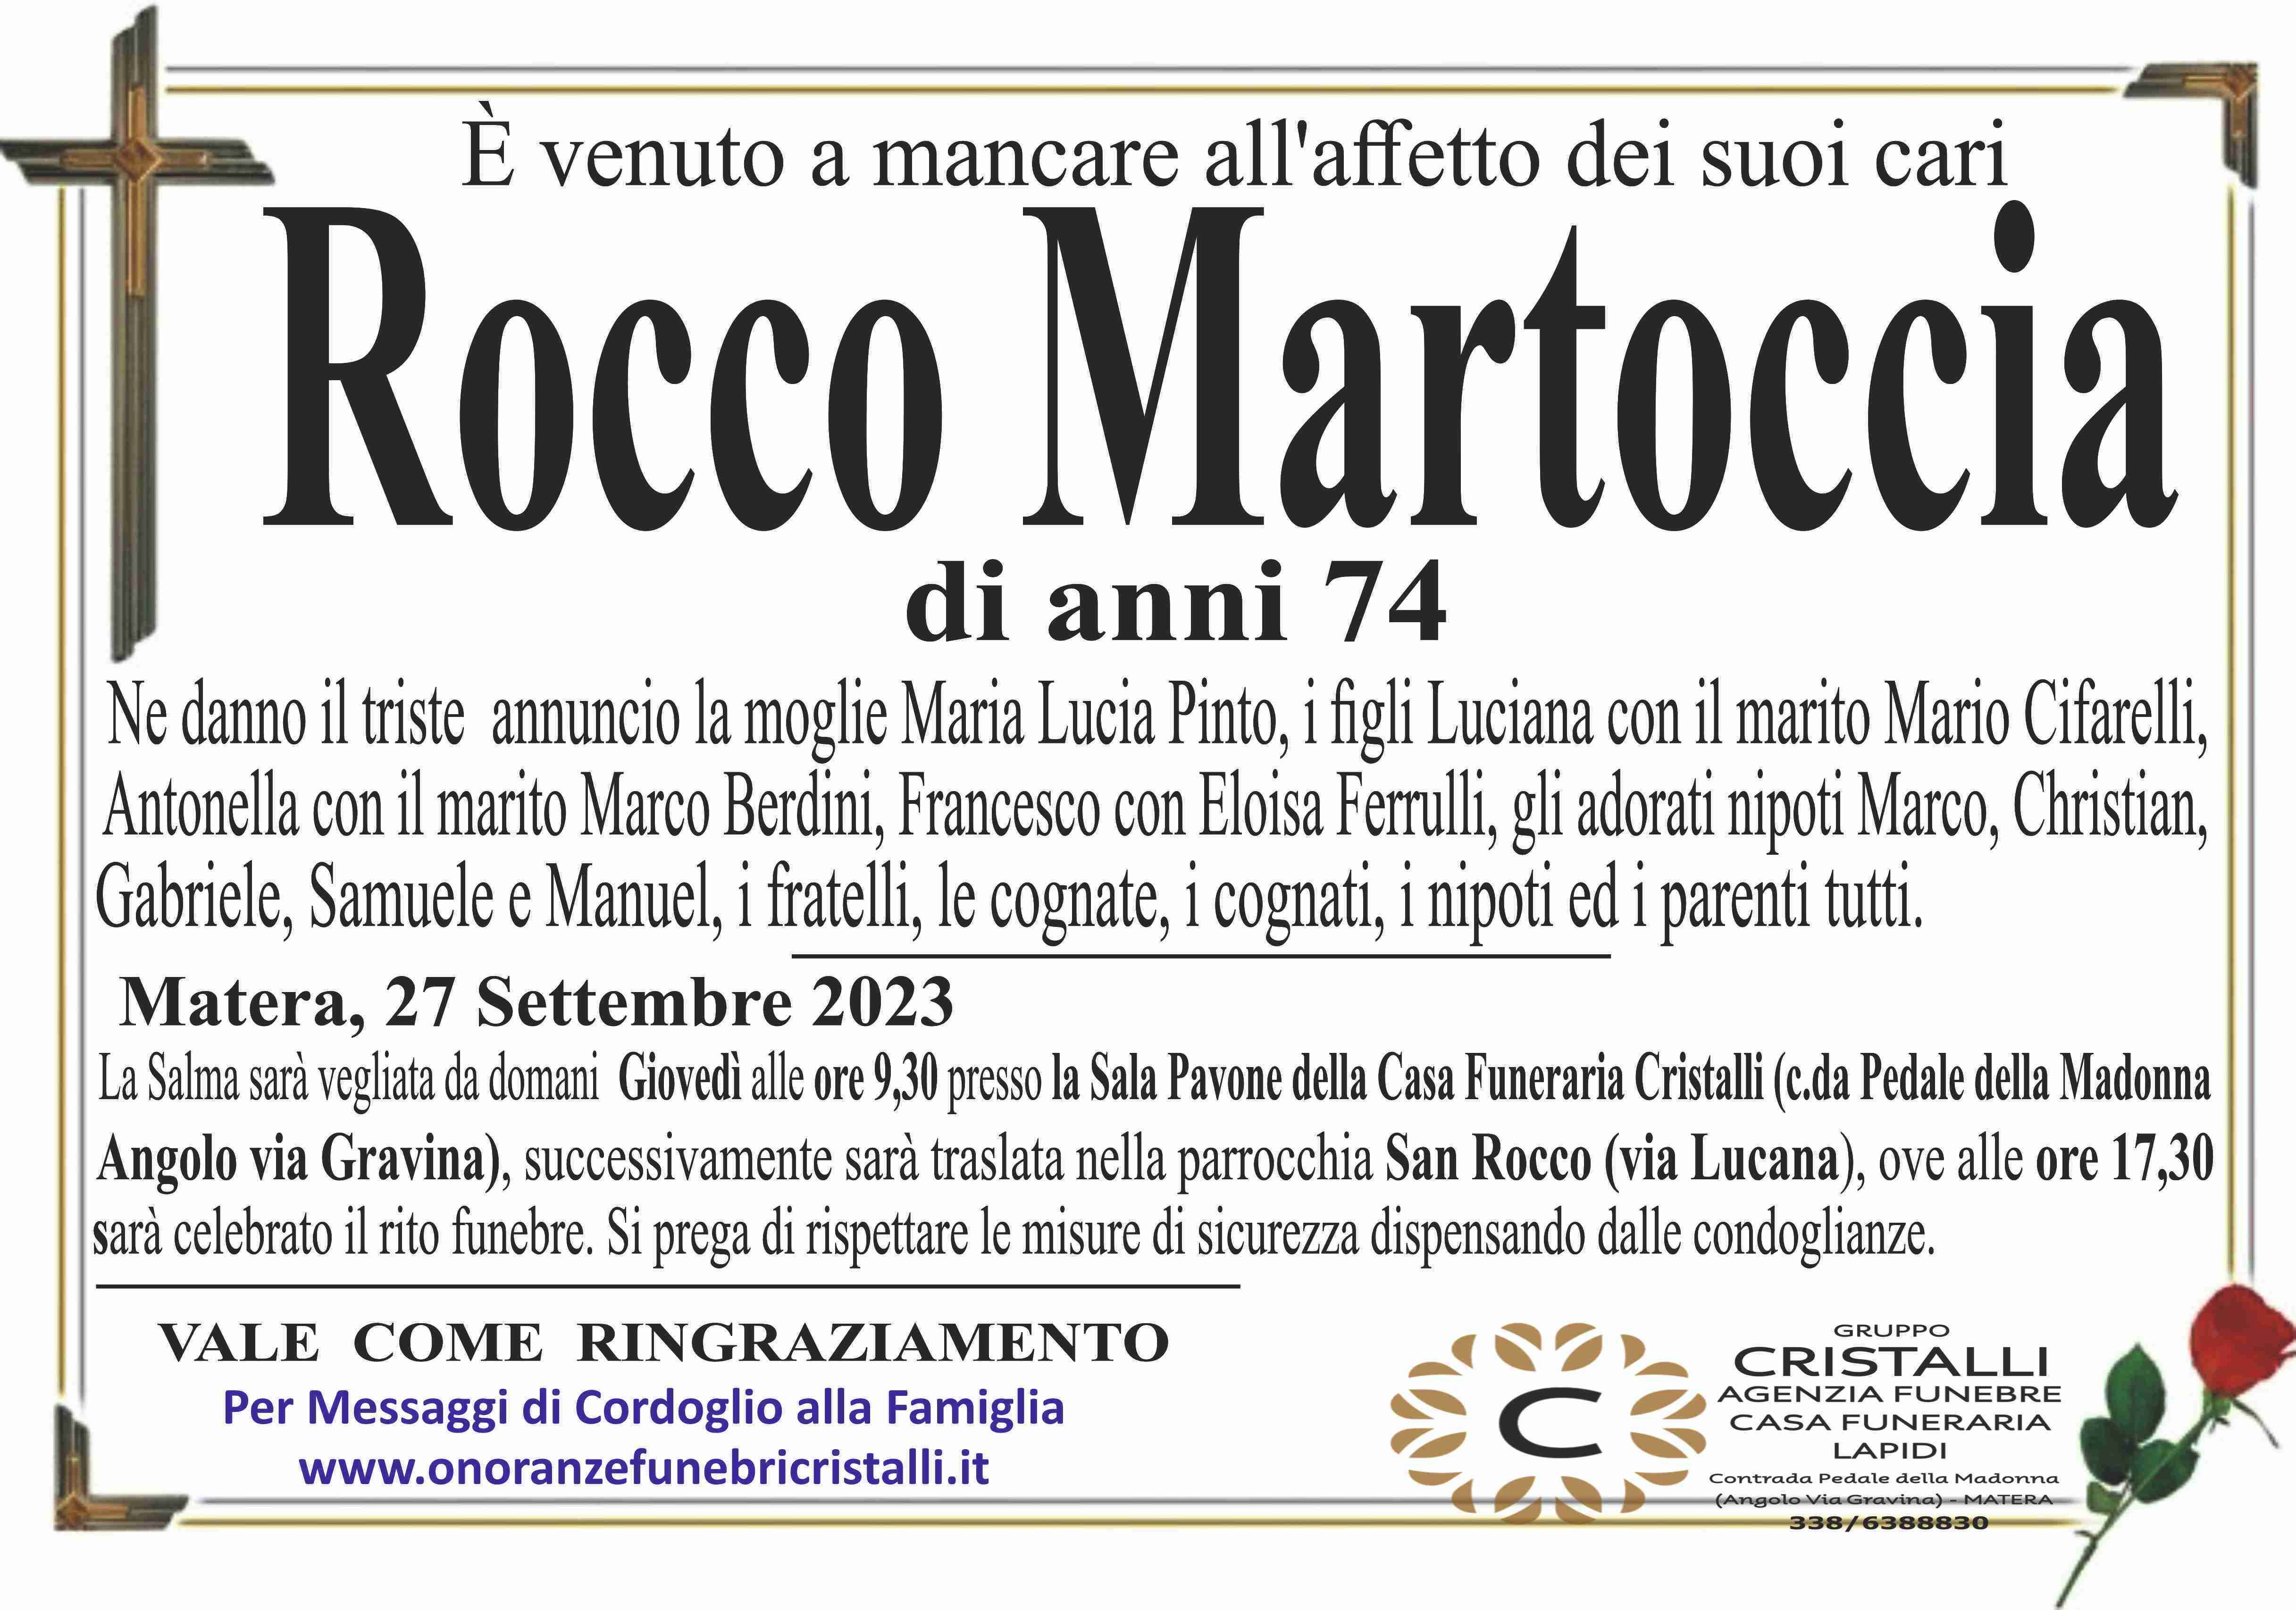 Rocco Martoccia